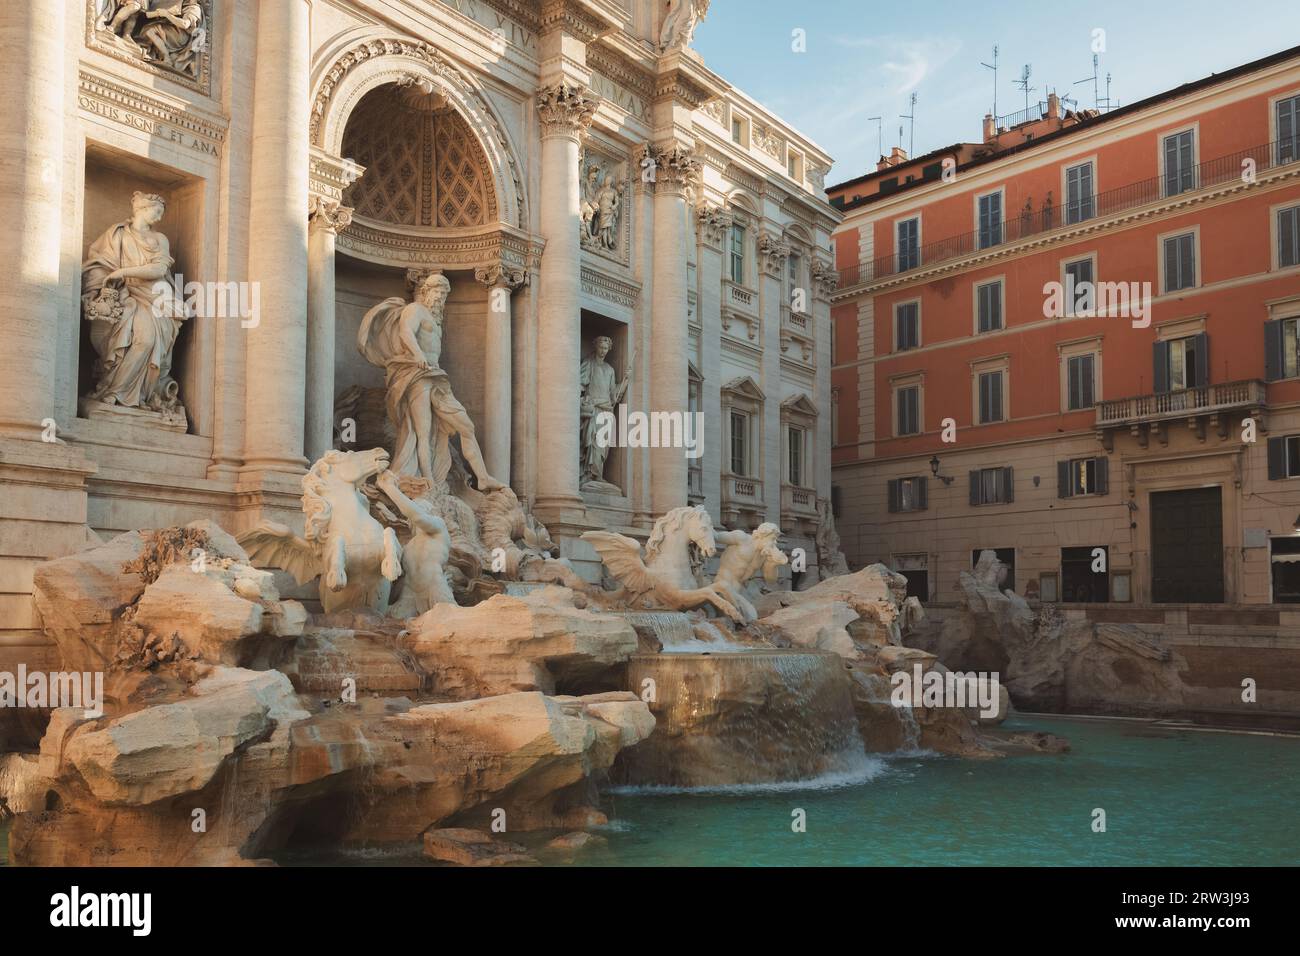 L'emblématique fontaine baroque de Trevi du 18e siècle à Rome, en Italie. Banque D'Images